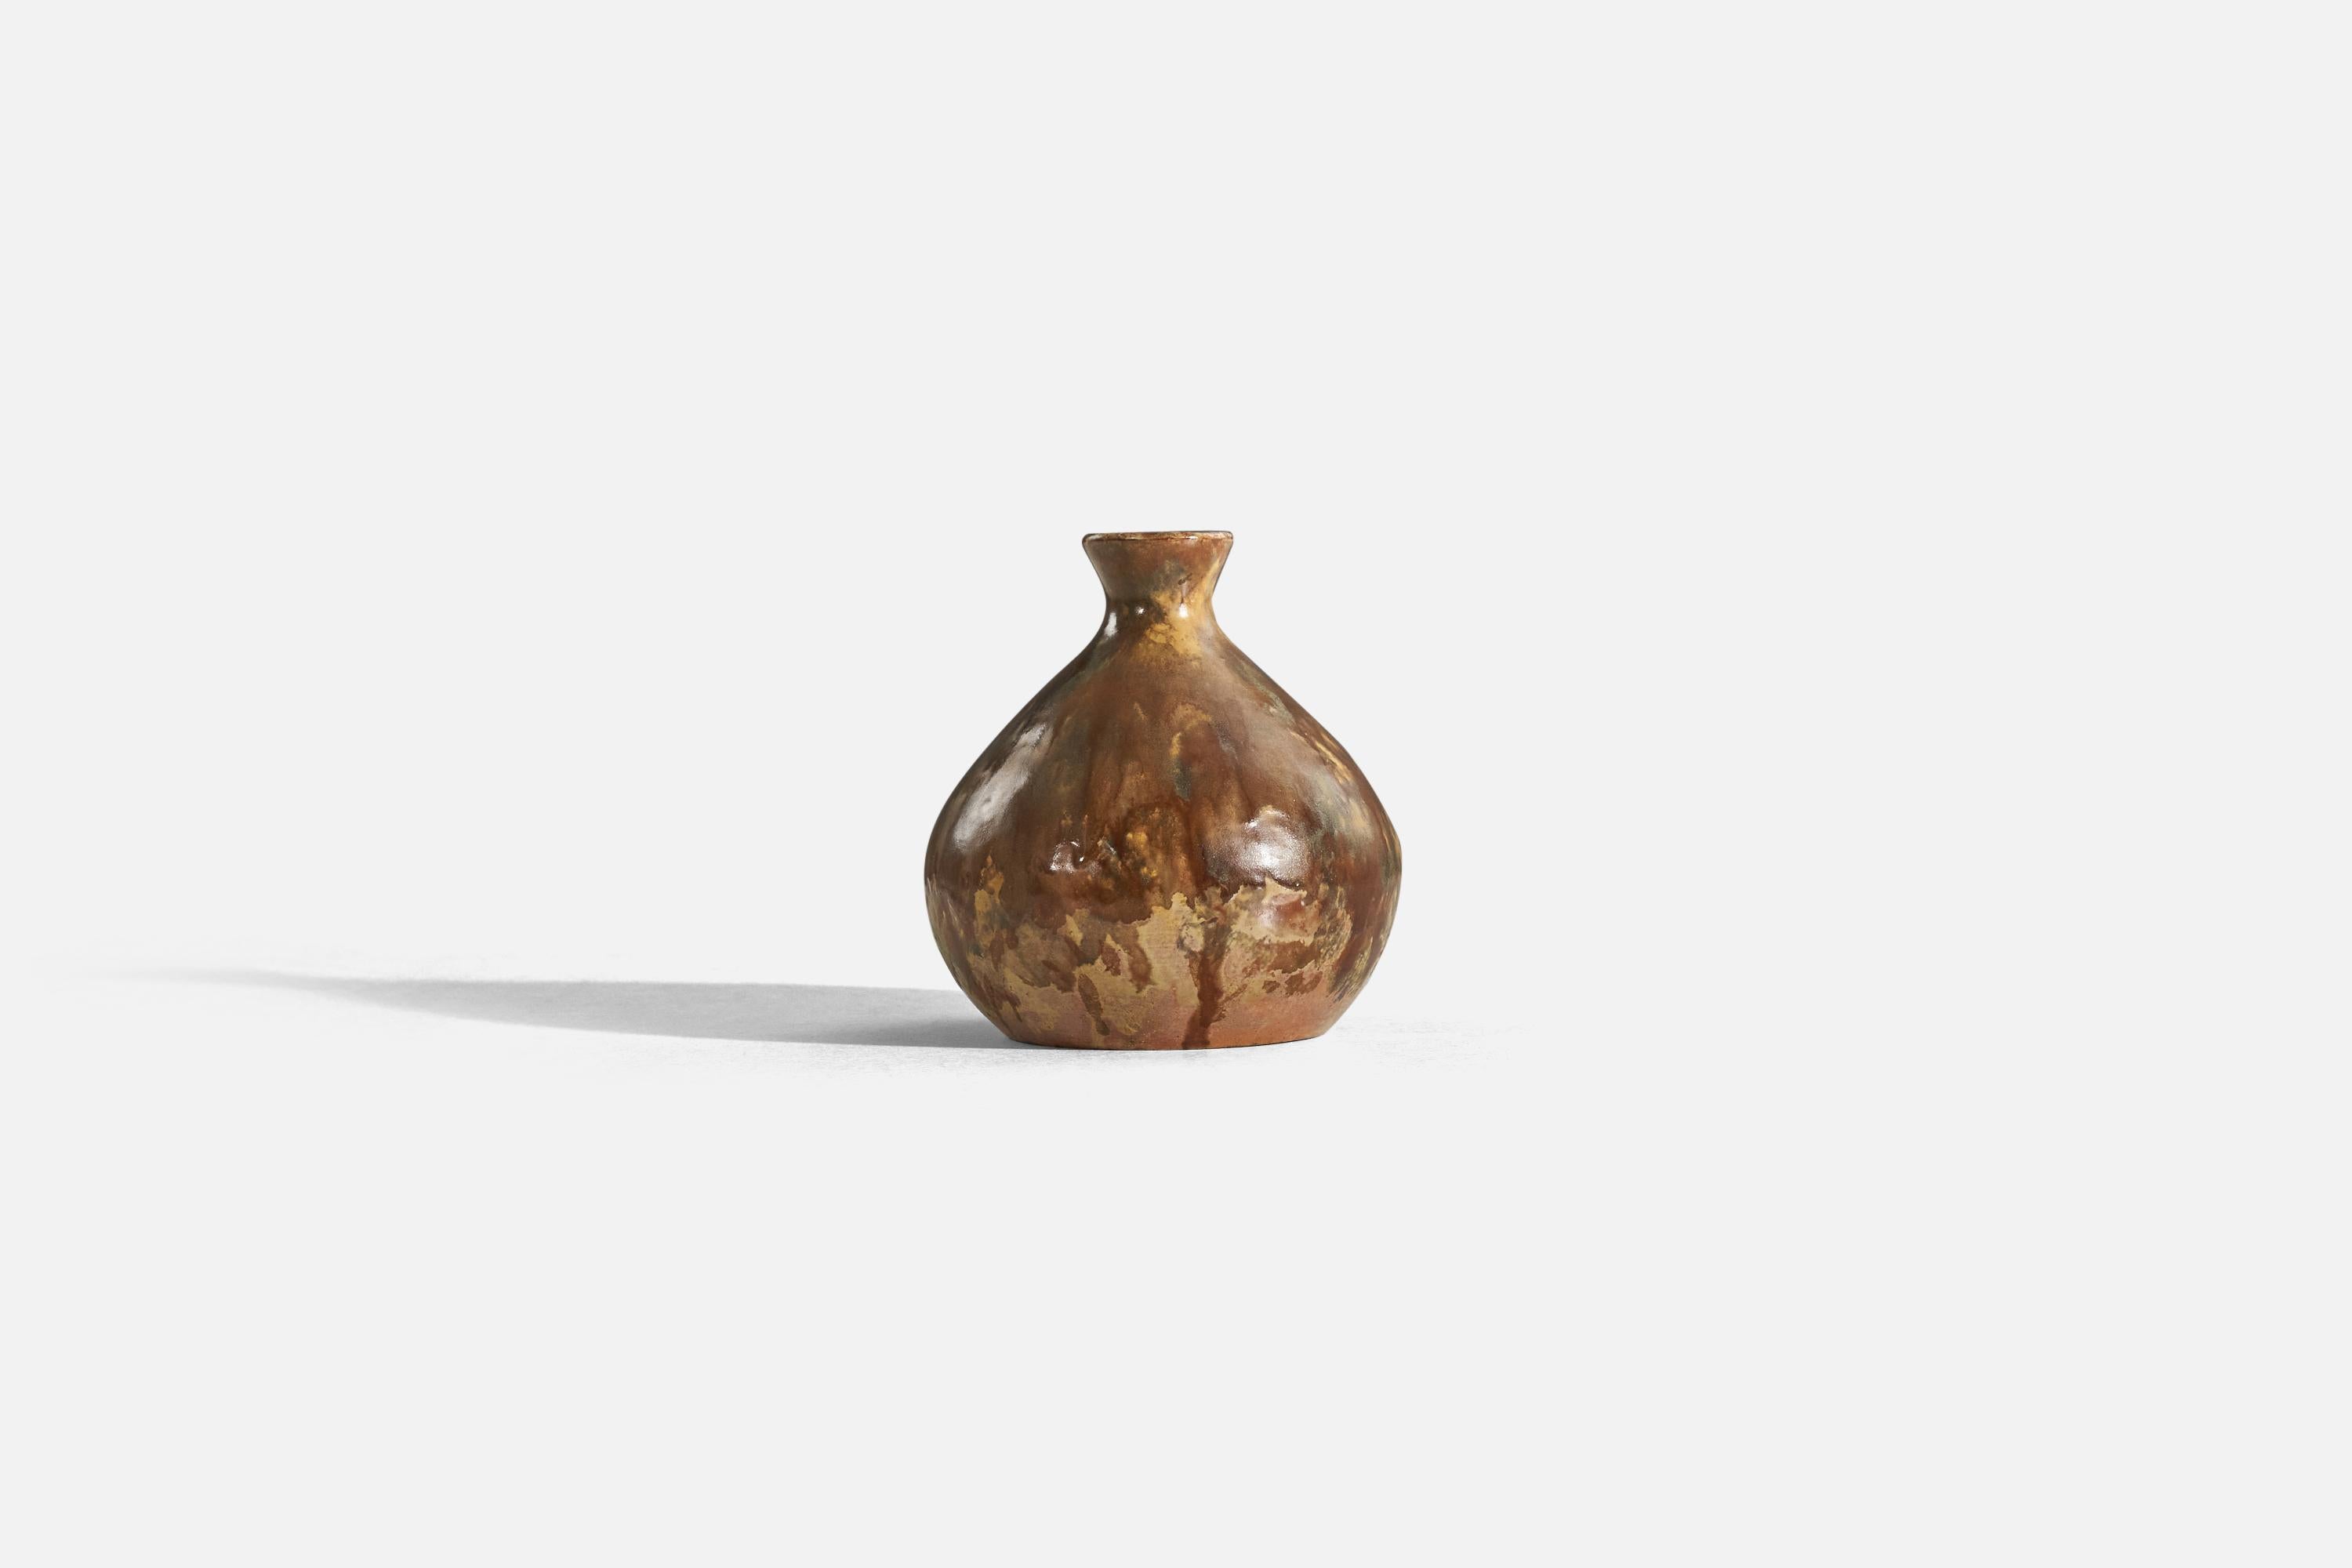 Vase en grès émaillé brun, conçu et produit par Andersson & Johansson, Höganäs, Suède, vers 1920.